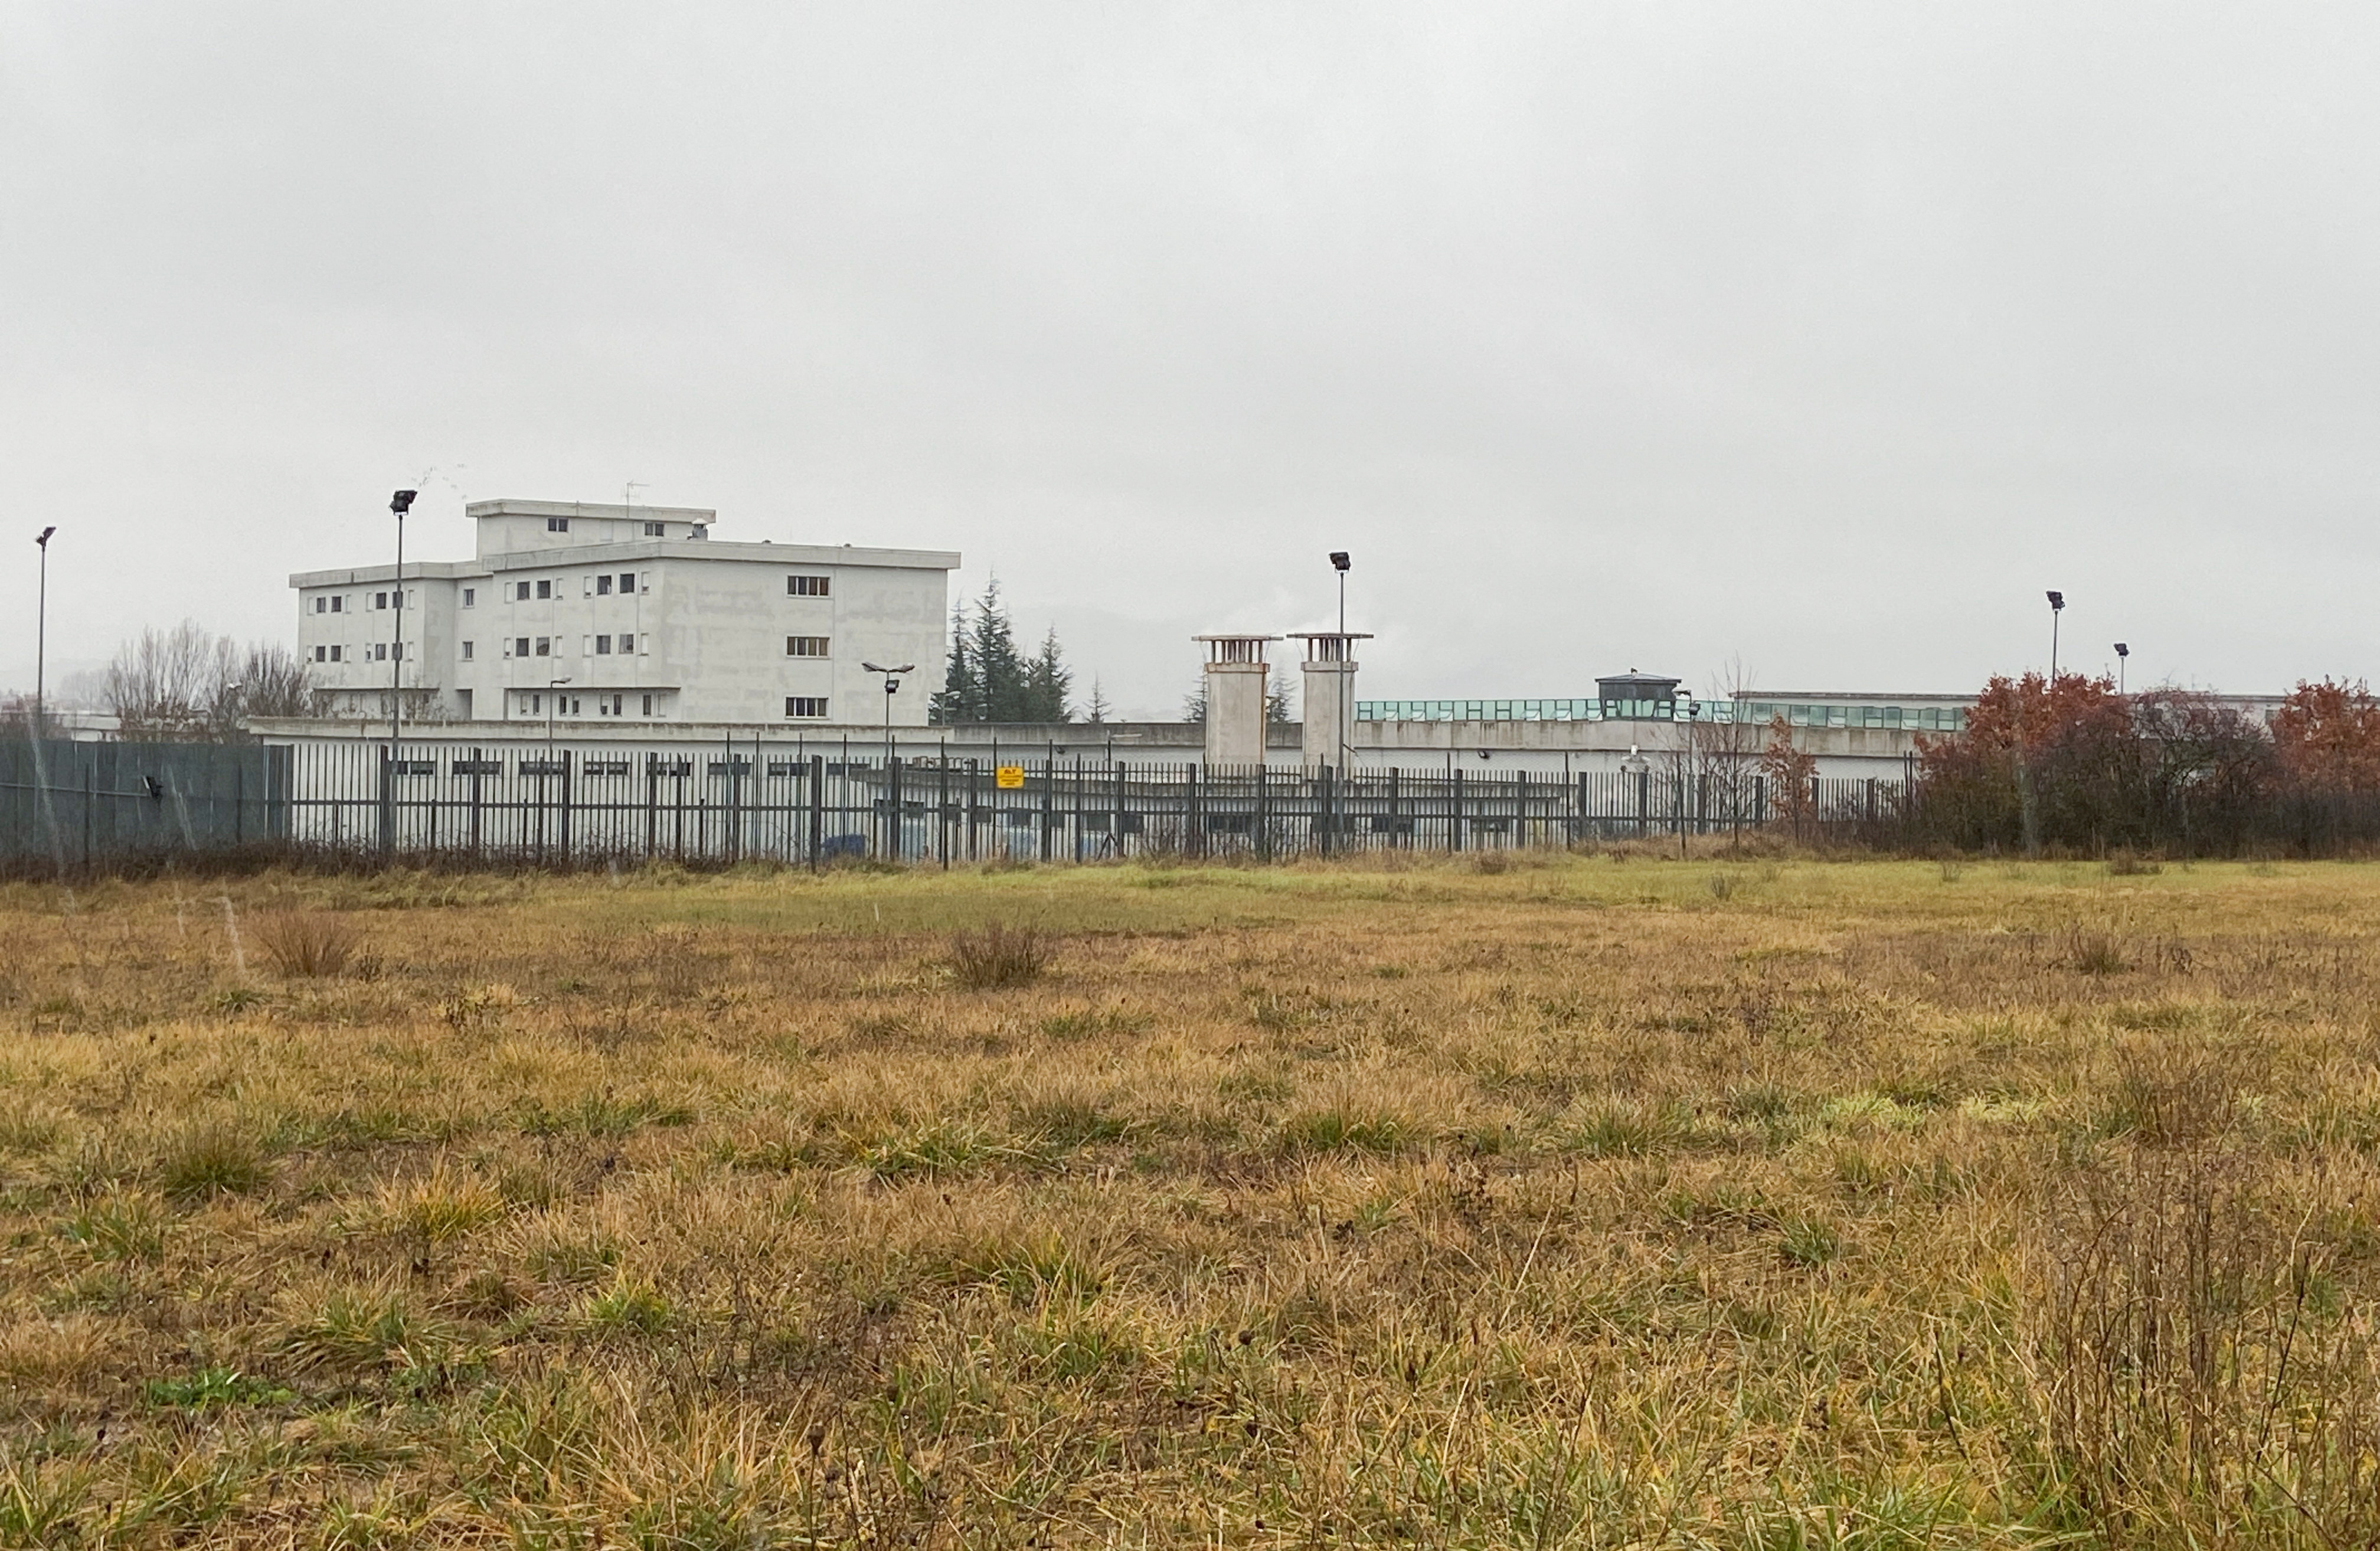 Una vista general muestra la prisión donde está detenido Matteo Messina Denaro, en L'Aquila, Italia, 18 de enero de 2023. REUTERS/Gabriele Pileri